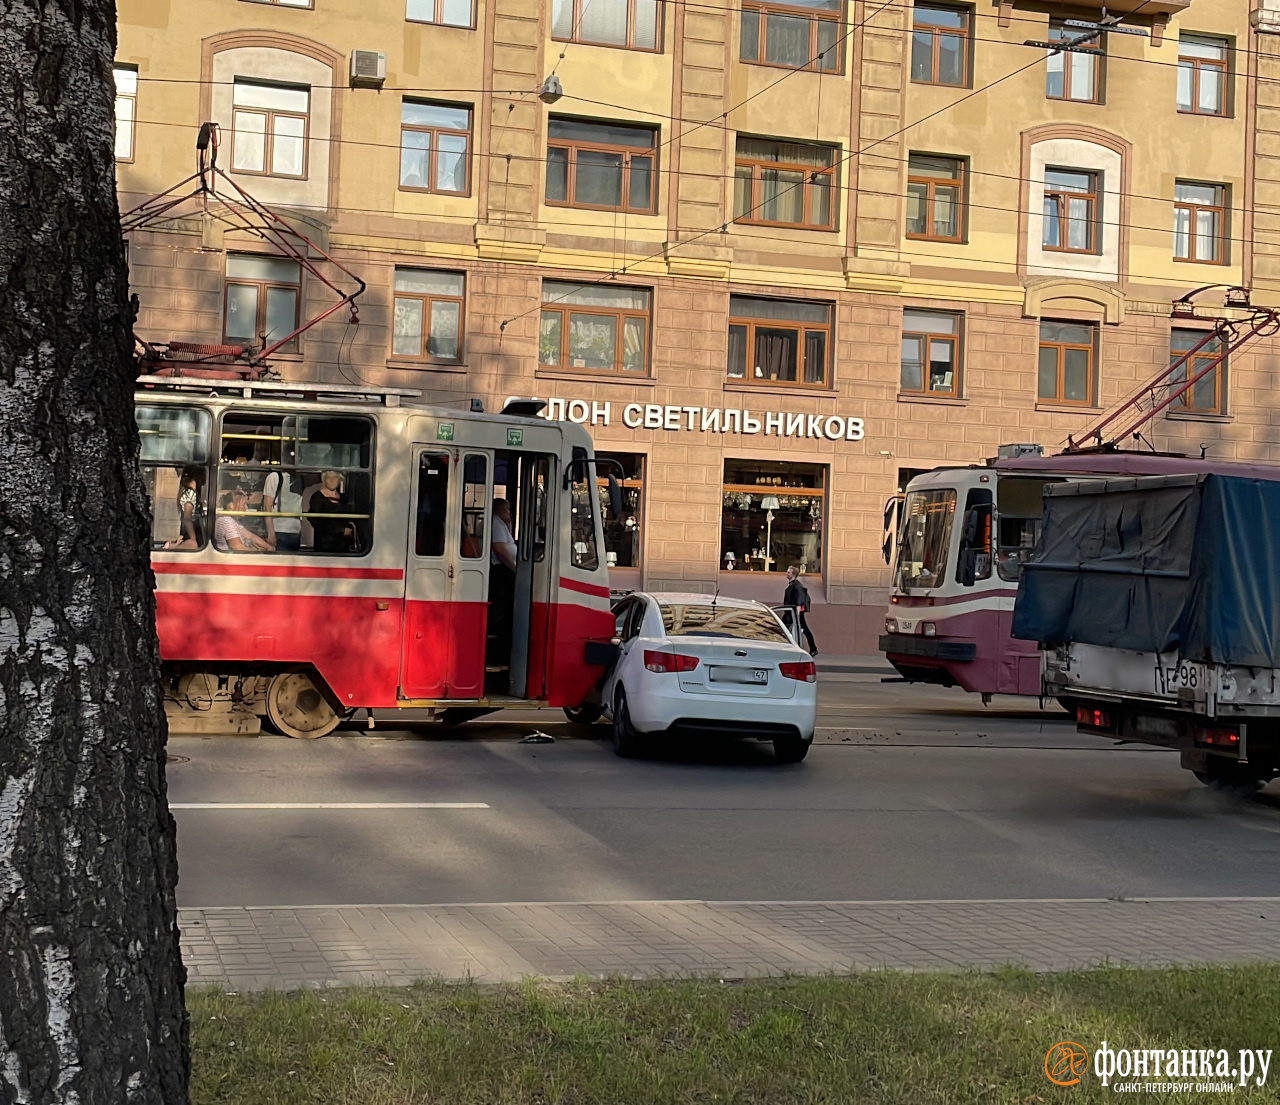 Трамвай протаранил автомобиль на проспекте Энгельса